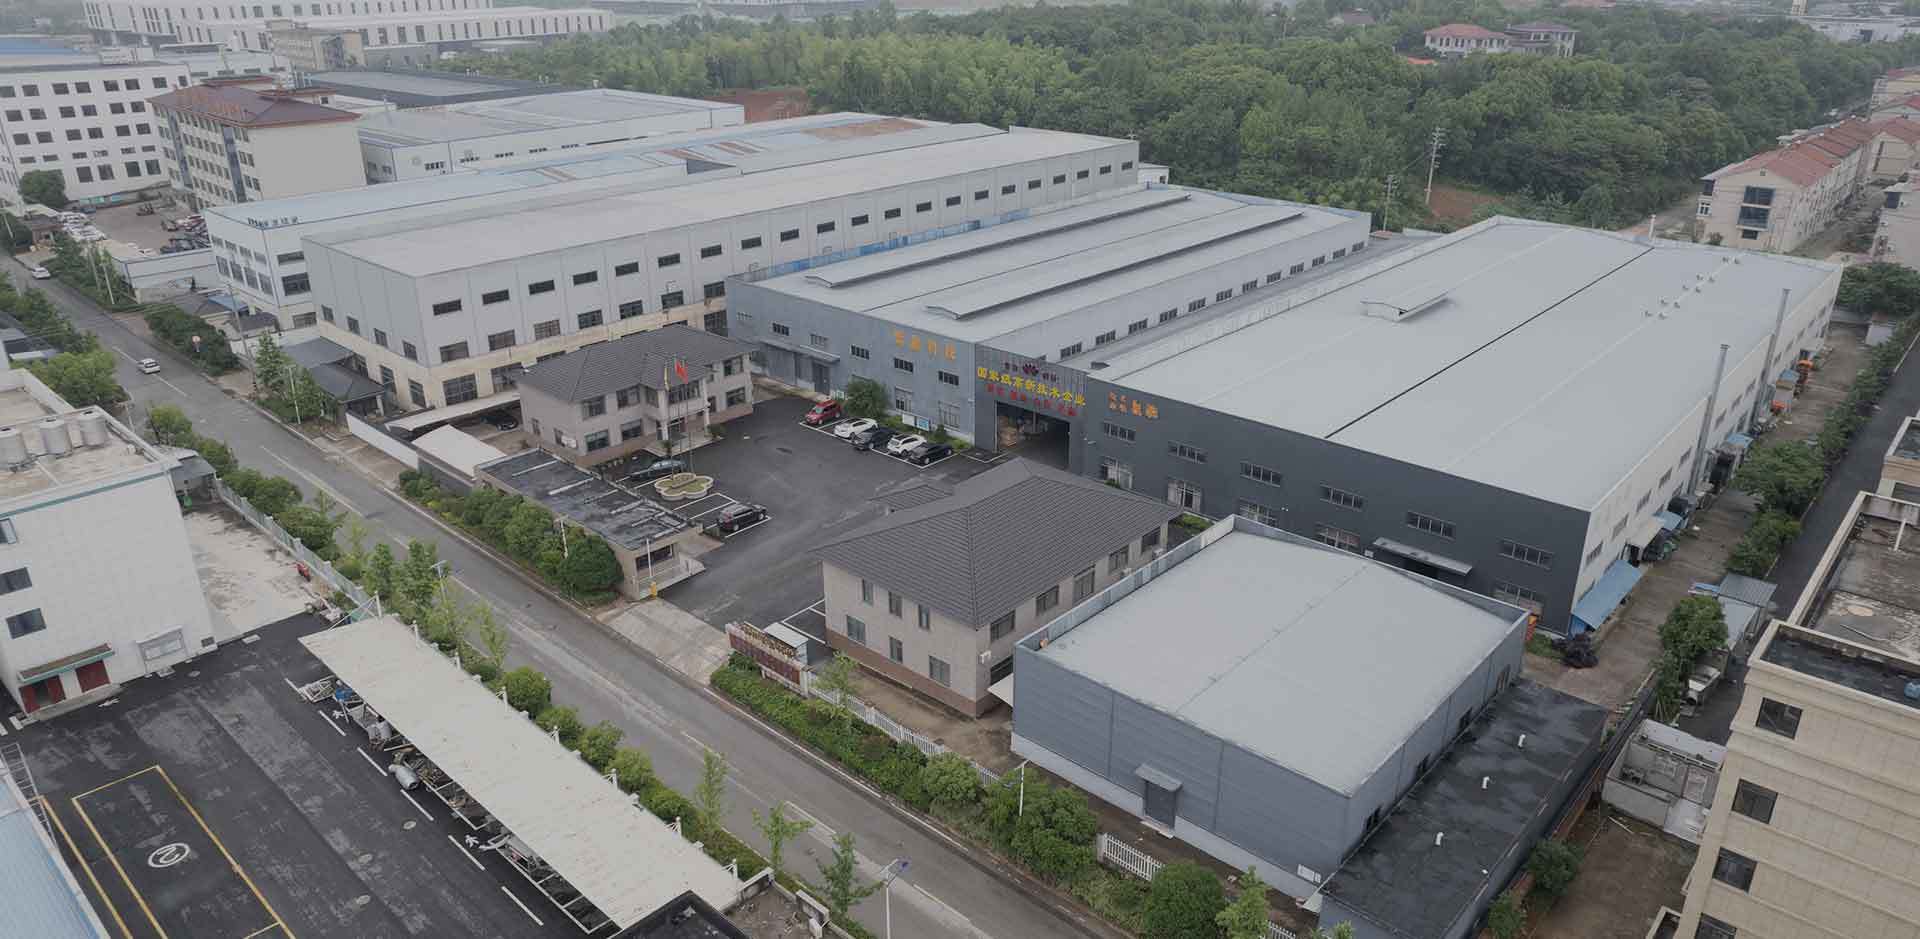 Zhejiang Changxing Zixin Technology Co., Ltd.